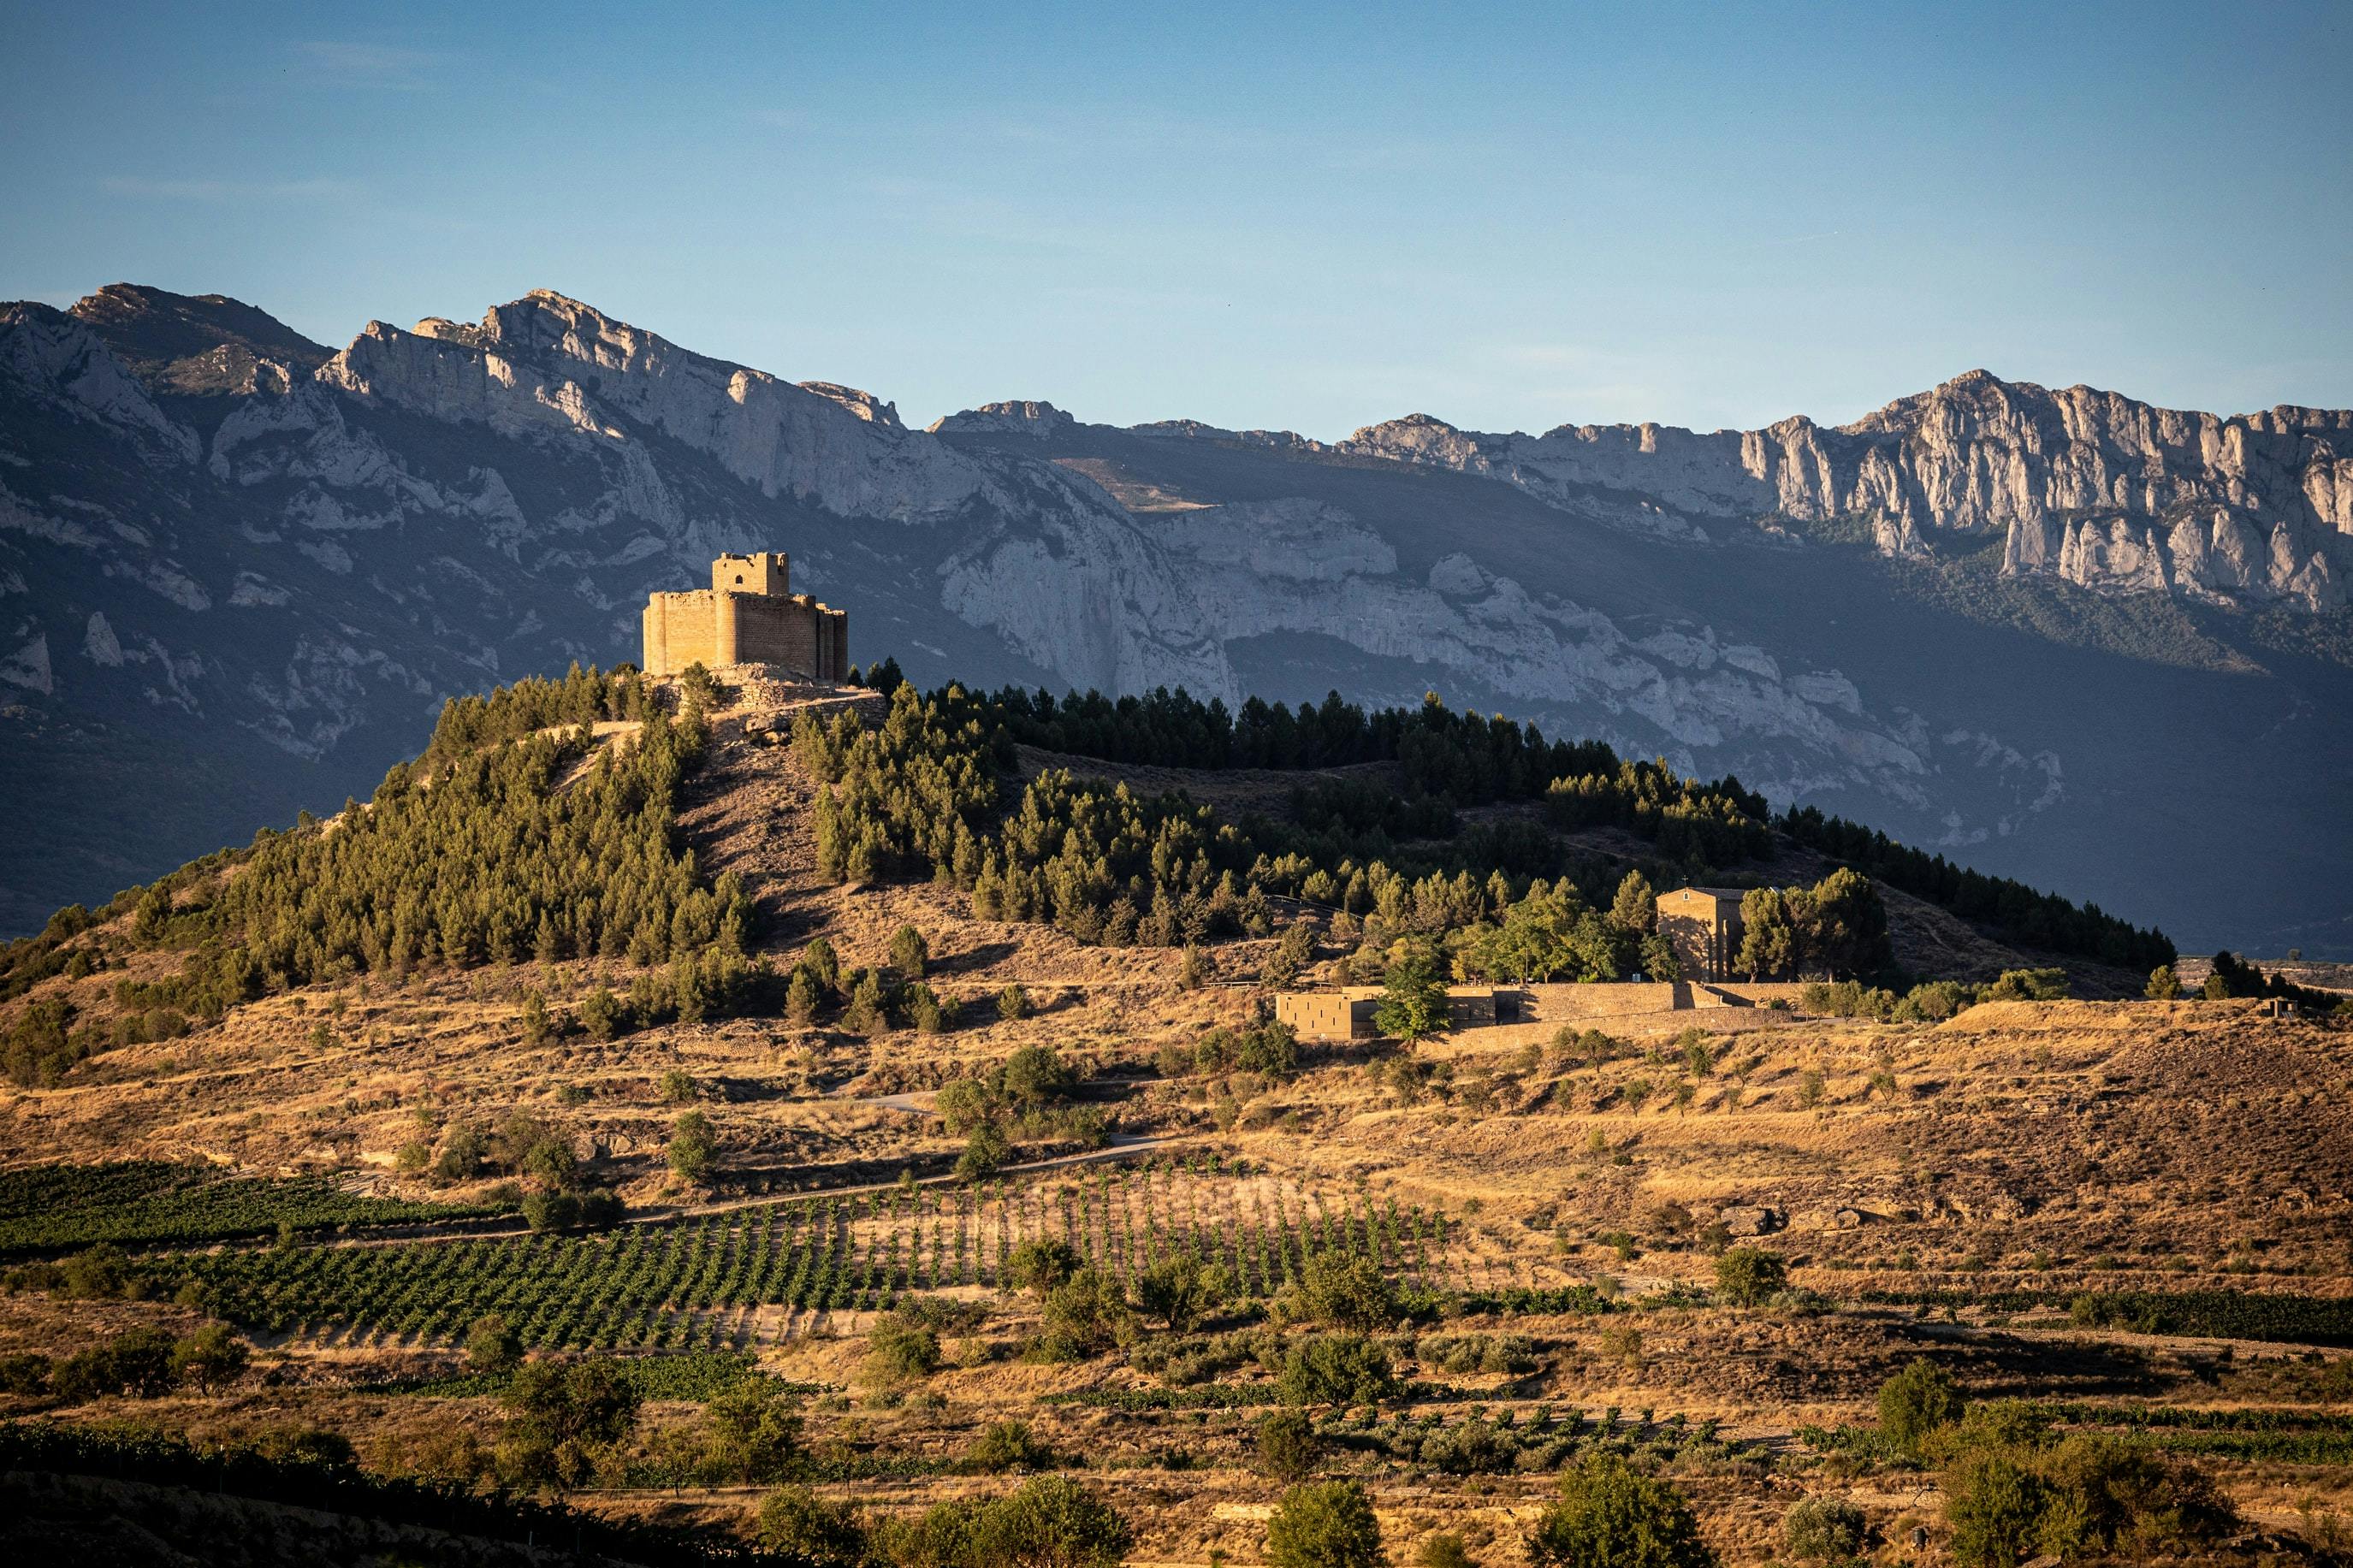 Le climat de la Rioja, chaud et sec l’été, mais frais la nuit grâce au vent et aux montagnes.